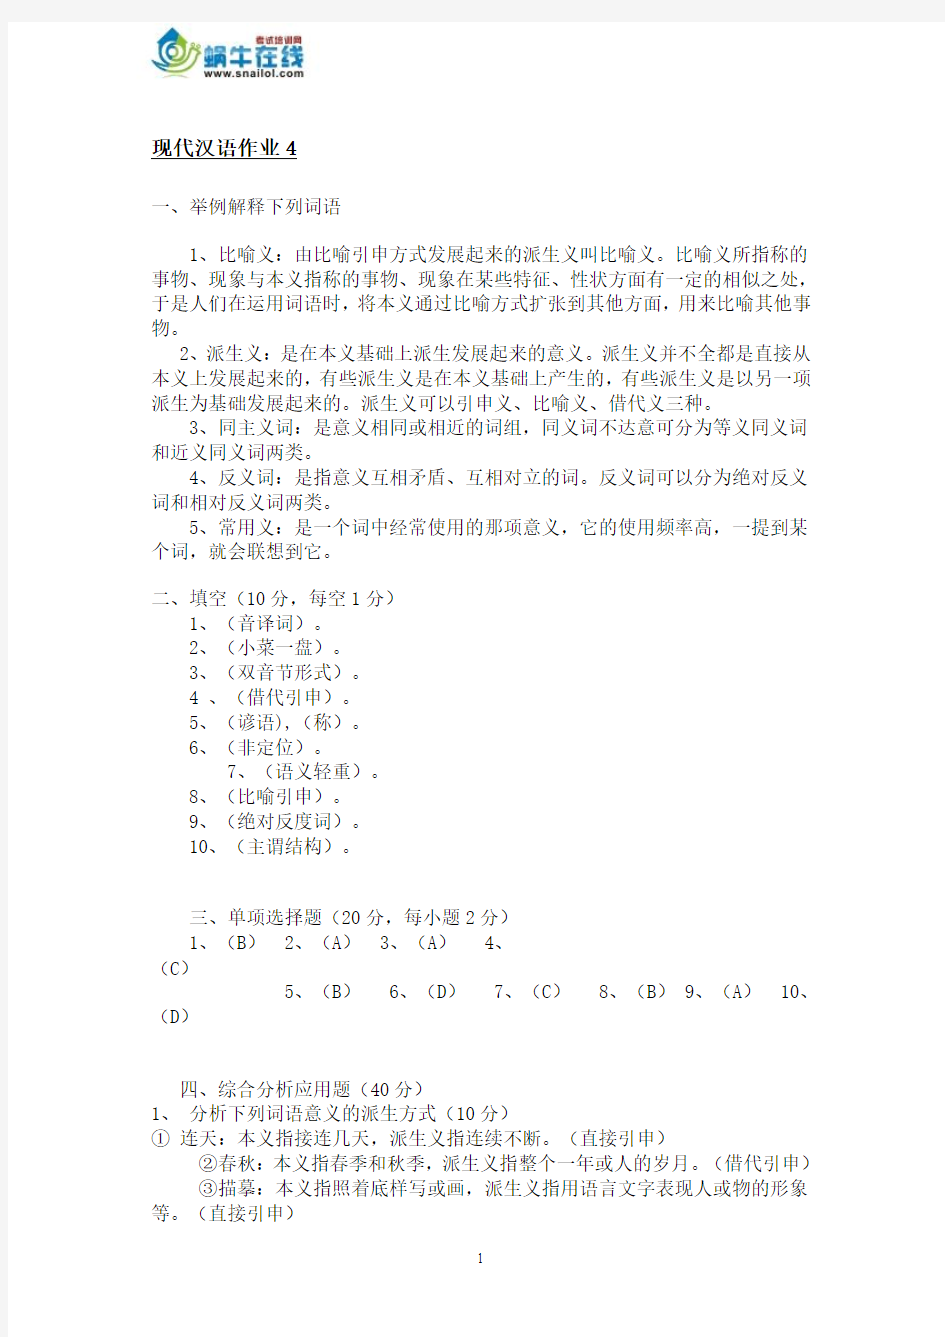 现代汉语作业4 形成性考核册答案